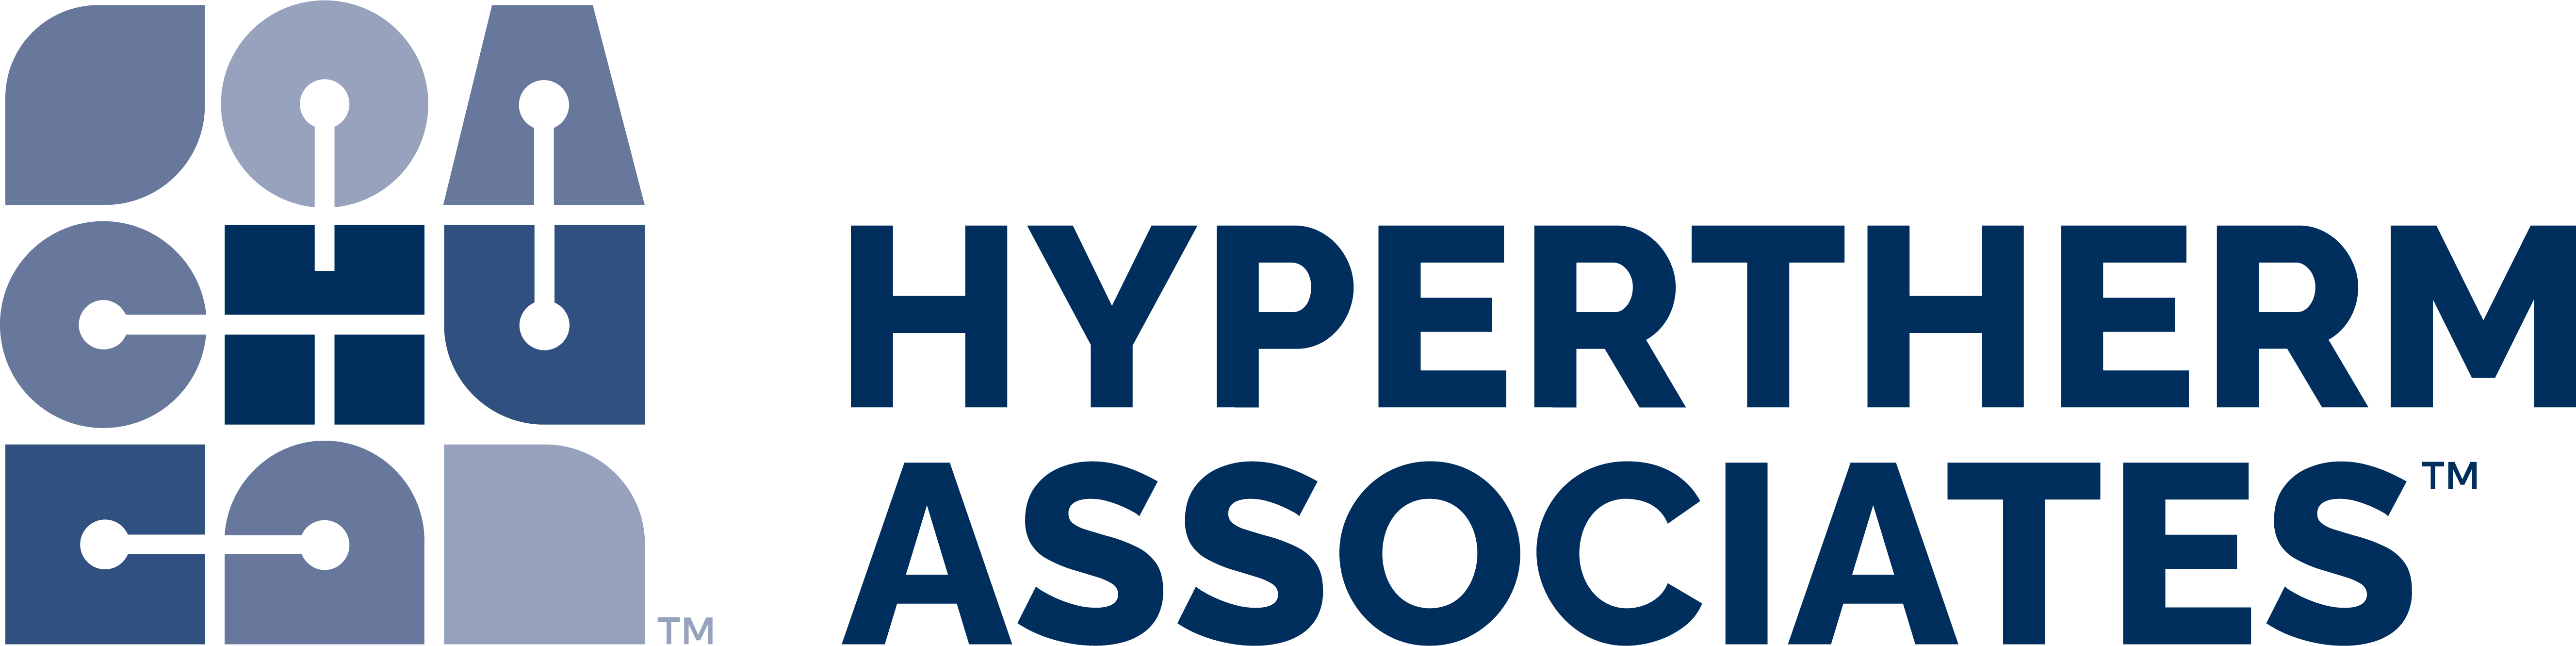 Hypertherm Associates 로고